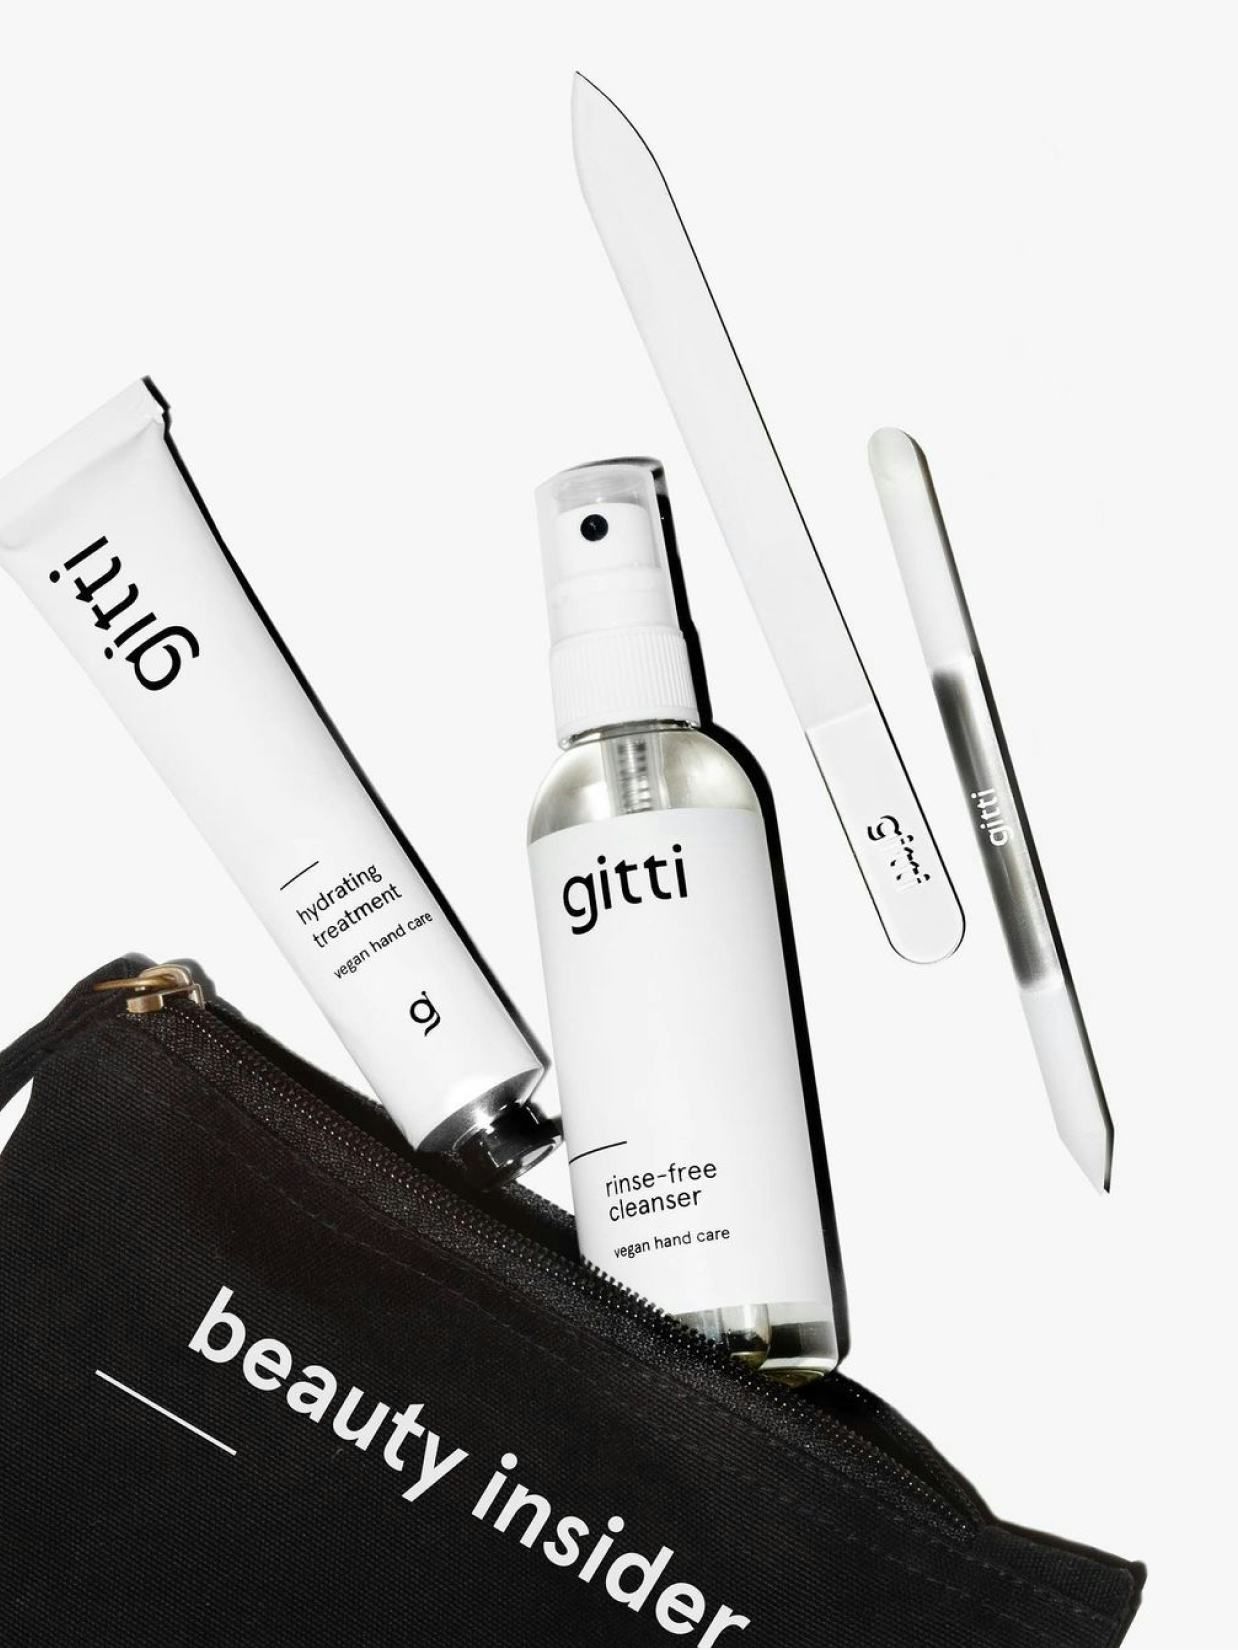 gitti - A better beauty brand